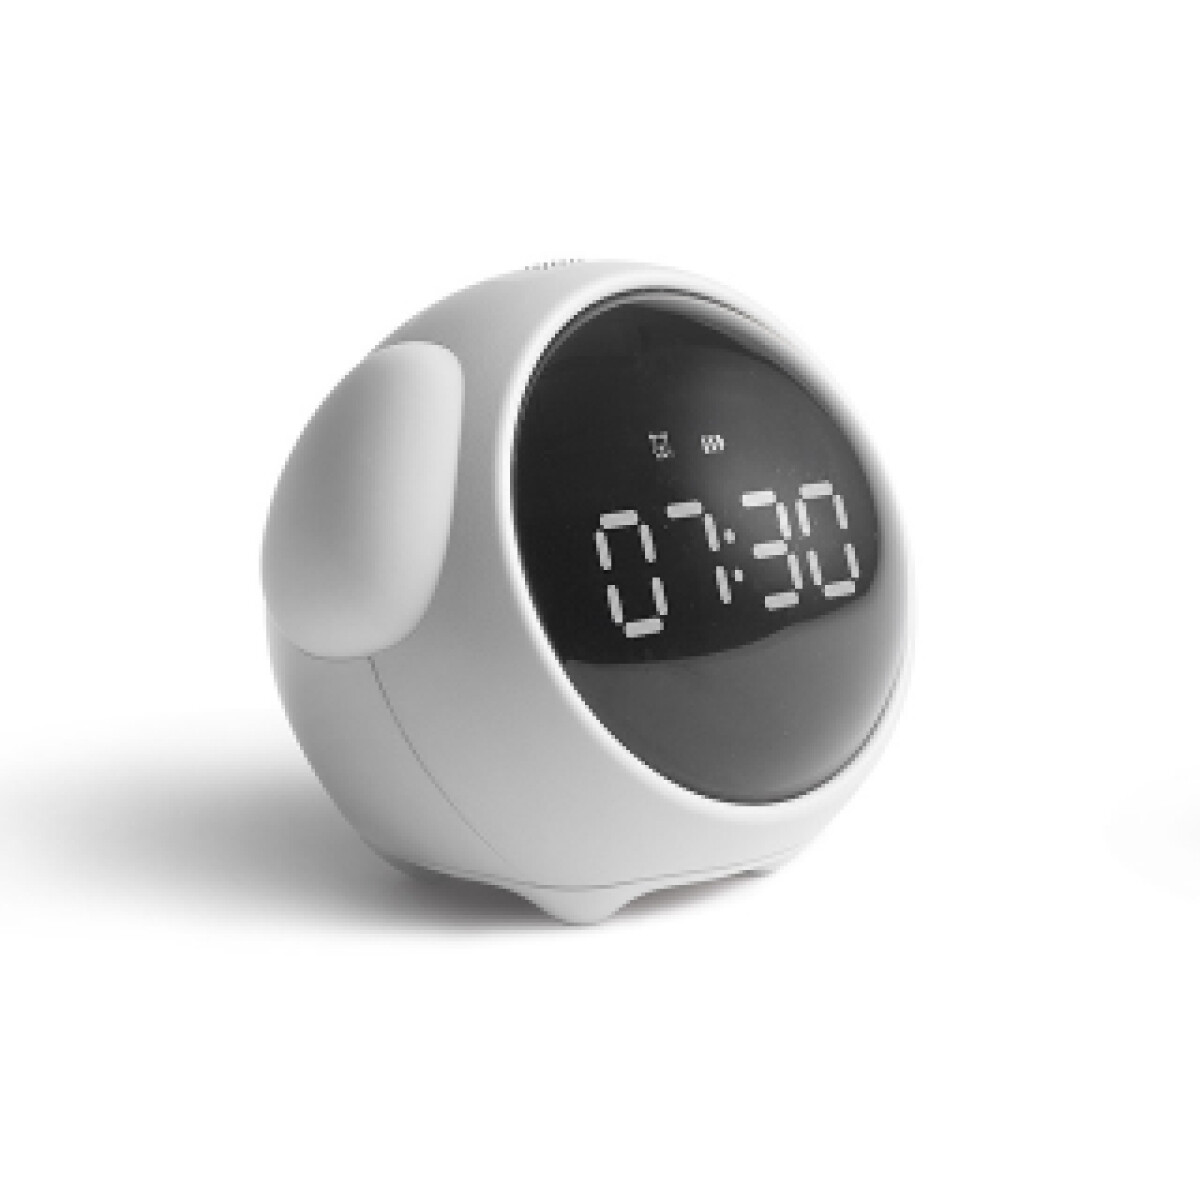 Reloj Despertador Digital - Blanco 